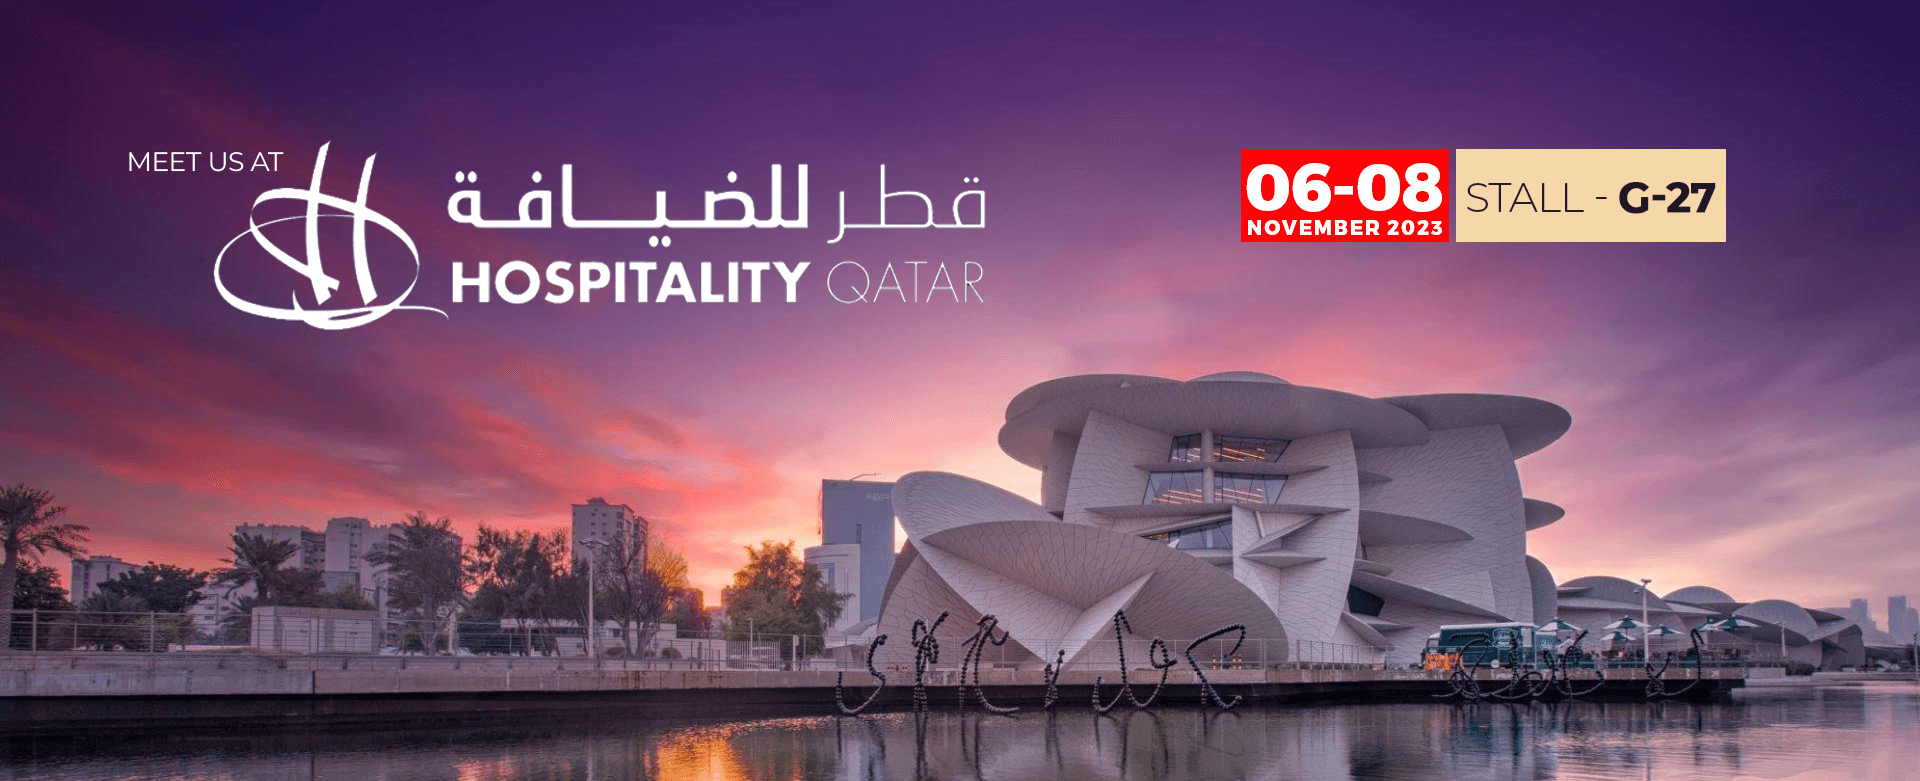 meet-us-at-qatar.png